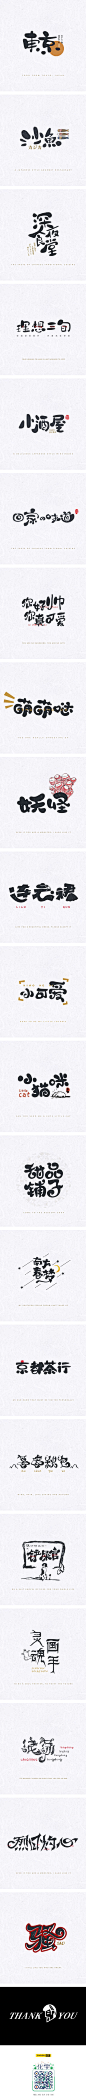 字体设计-手写字体# 01-字体传奇网-中国首个字体品牌设计师交流网